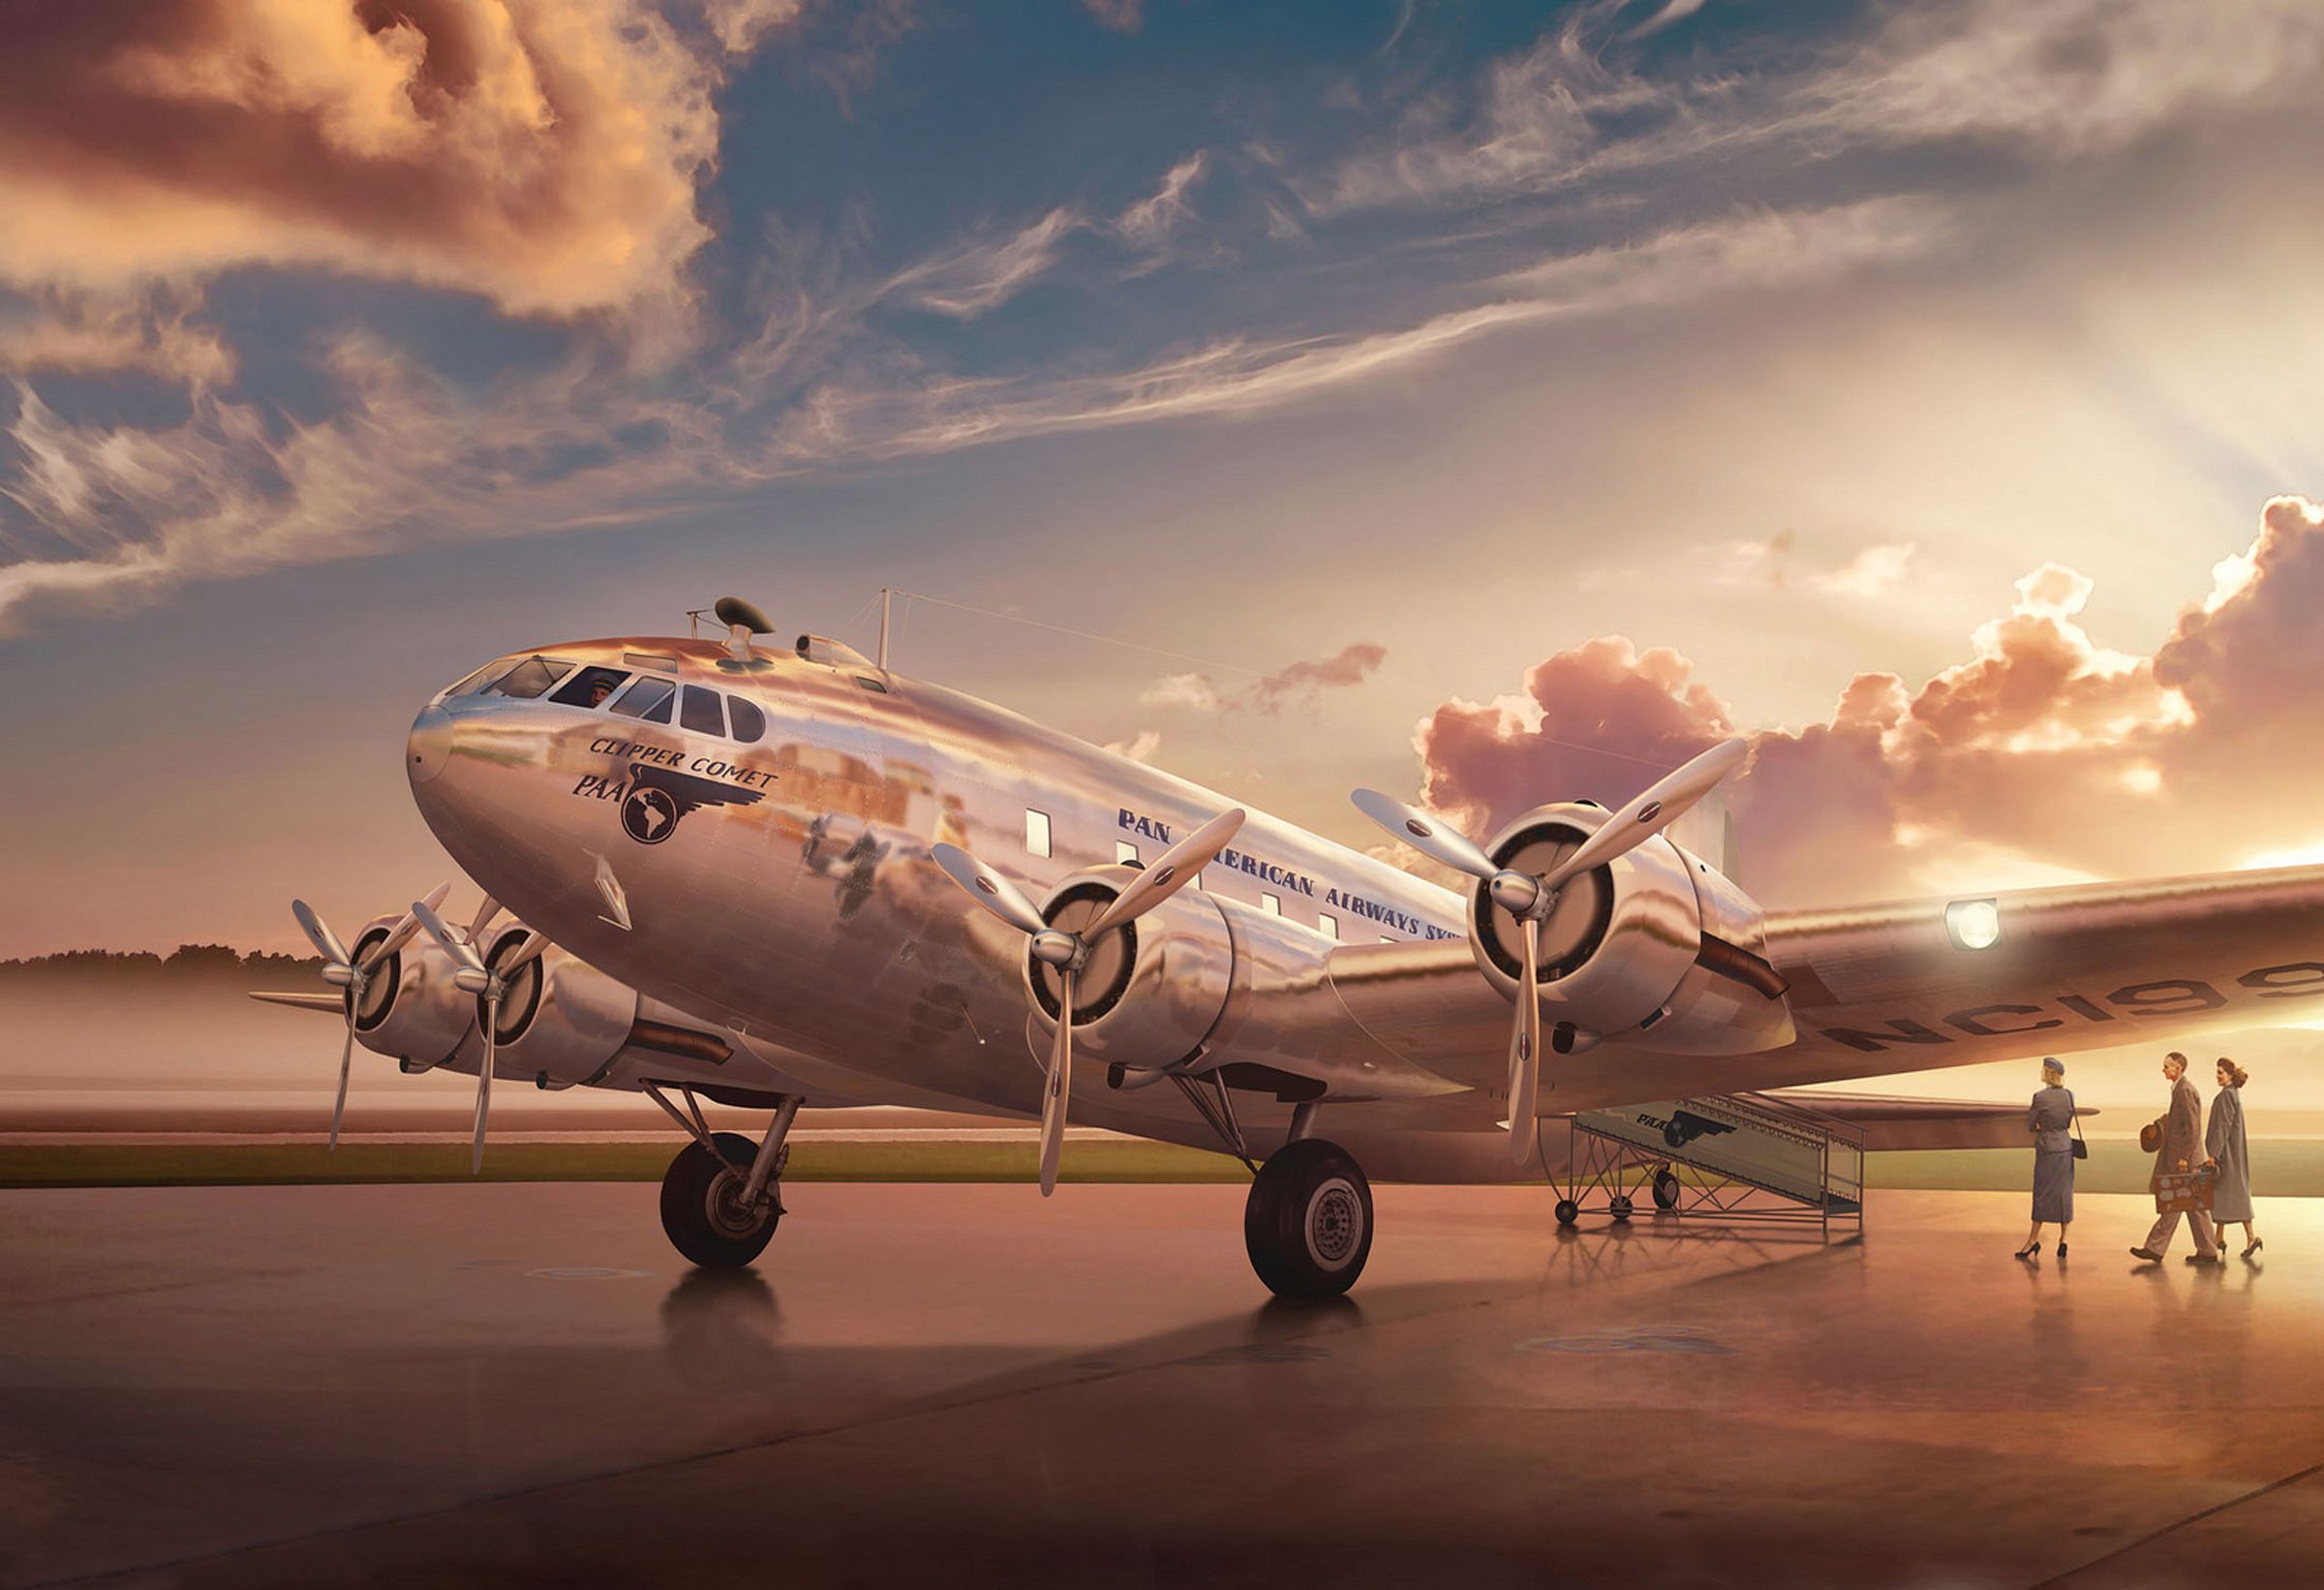 عکس رویایی خوشگل ترین هواپیمای قدیمی با بدنه براق